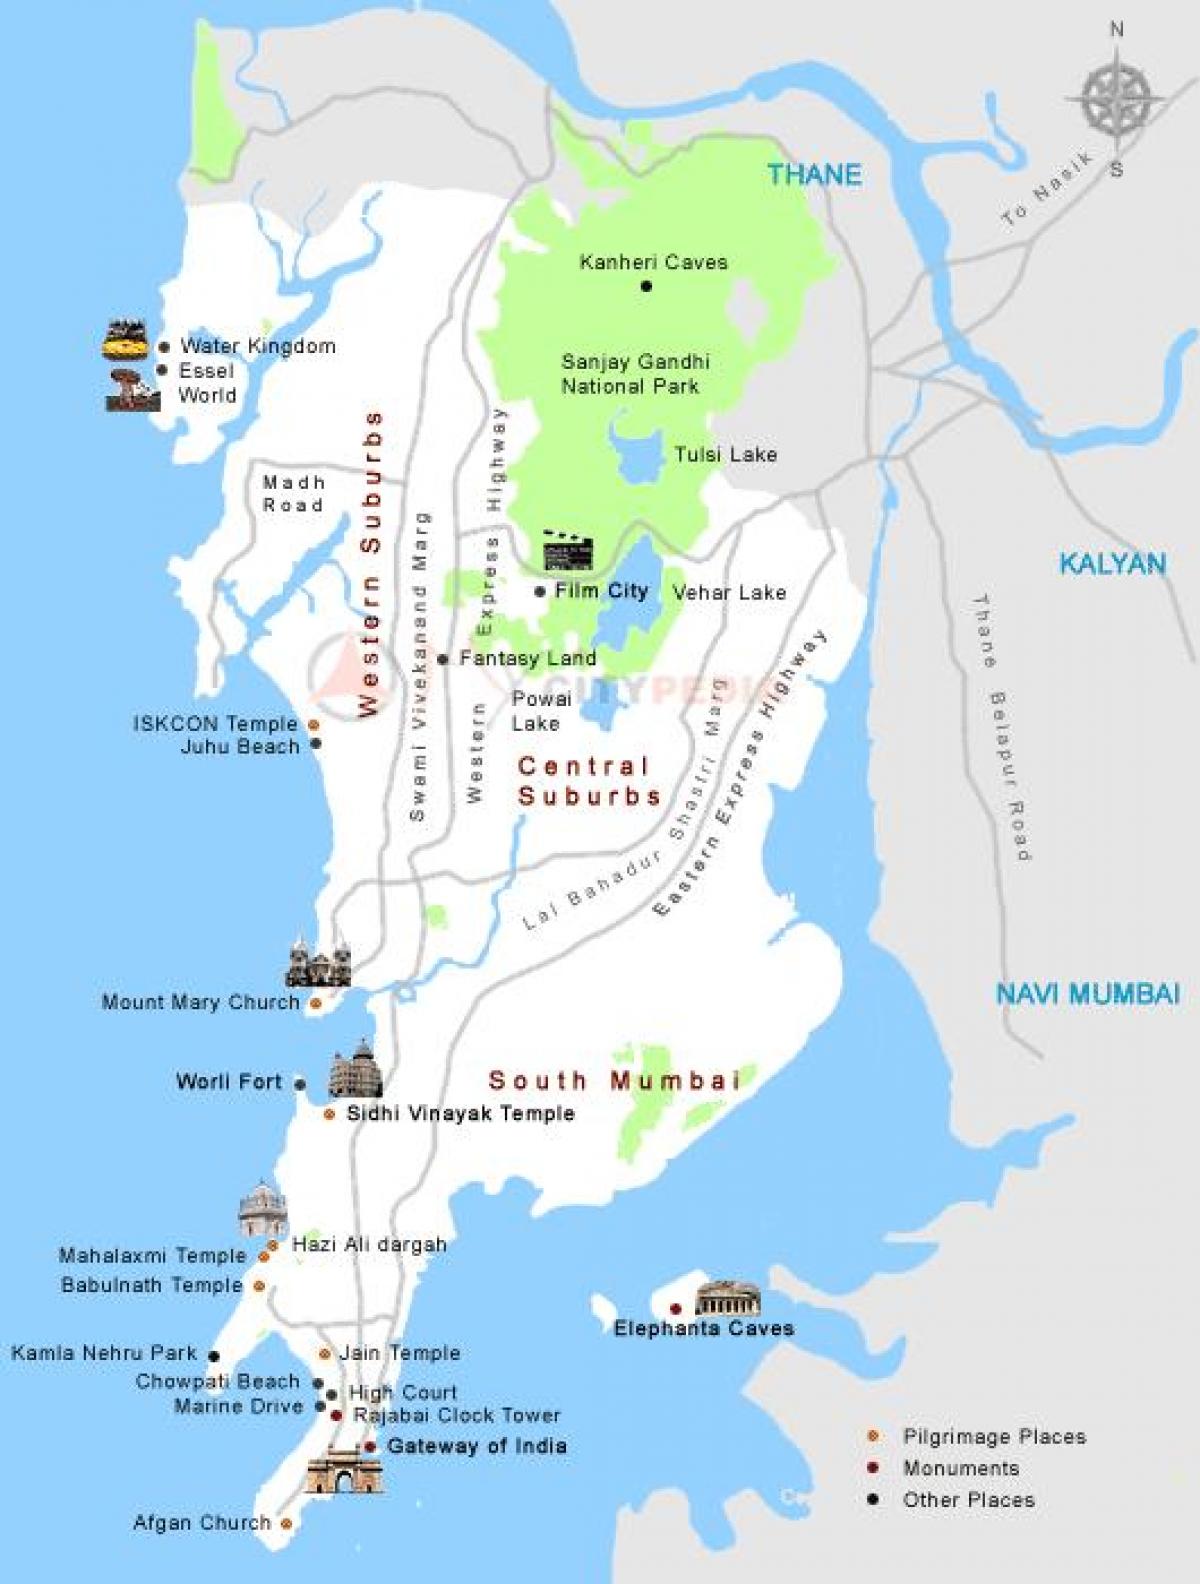 Mumbai darshan nơi bản đồ